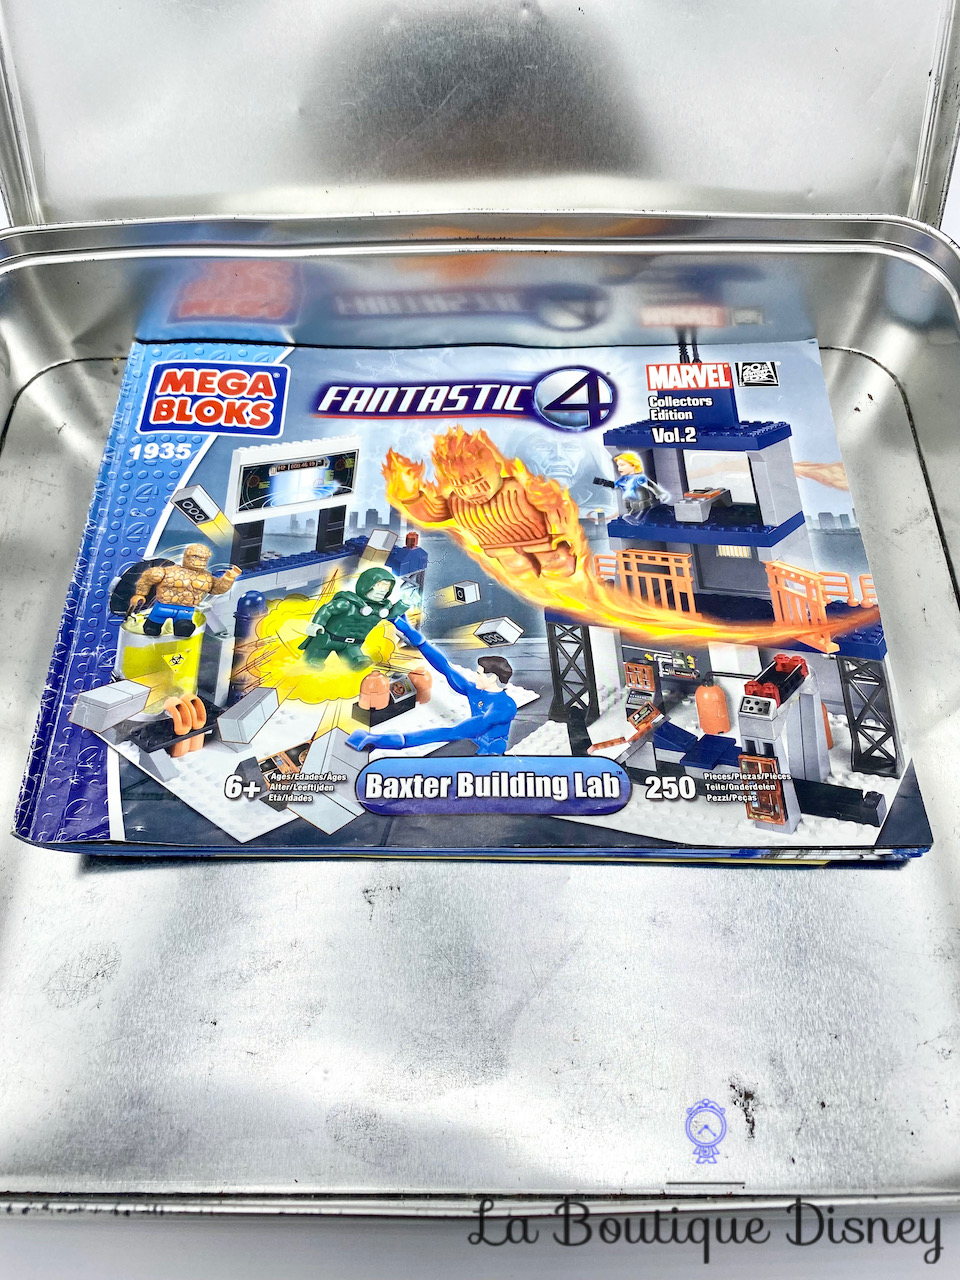 jouet-lego-megabloks-4-fantastic-marvel-baxter-building-lab-collectors-edition-7